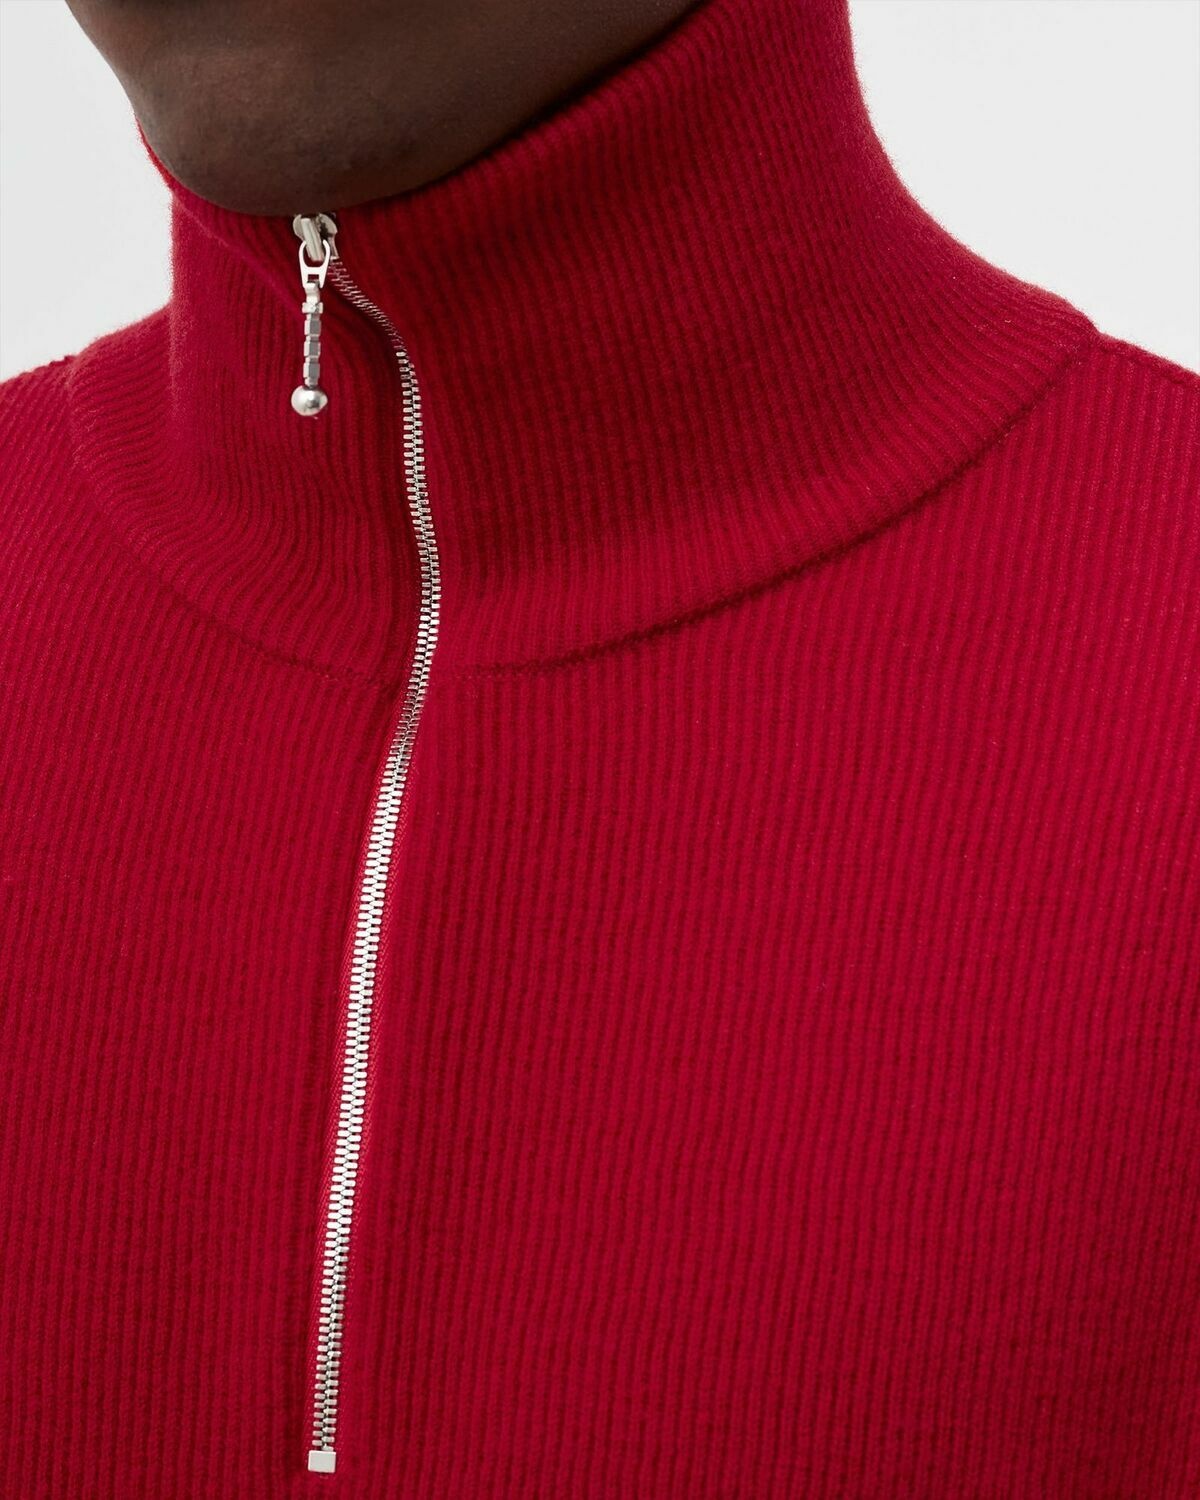 Bstn Brand Bstn & Nba Portland Trail Blazers Merino Trojer Red - Mens - Pullovers